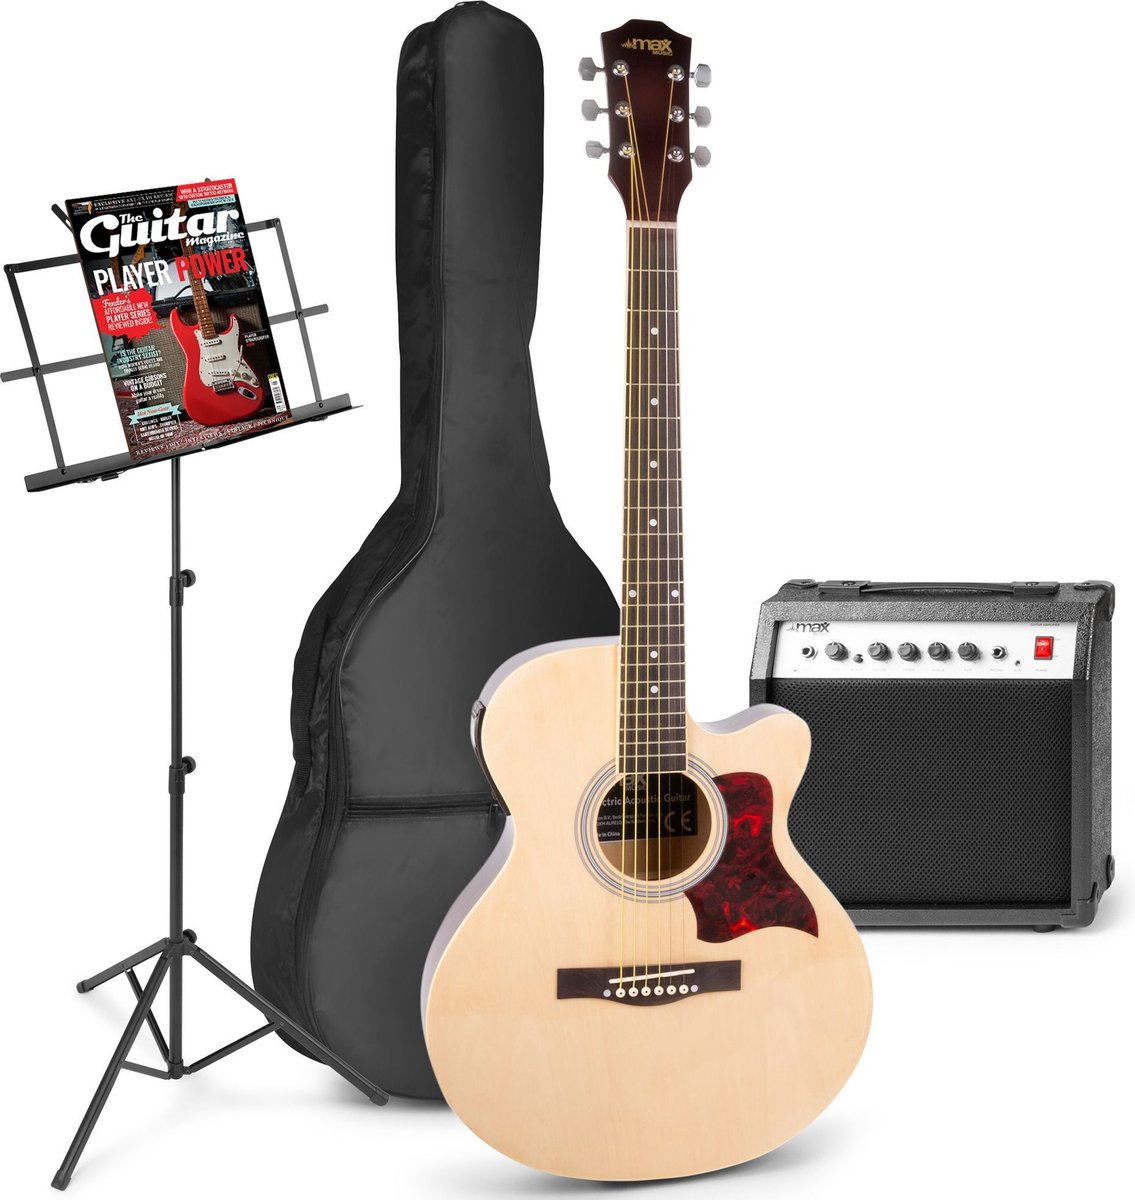 Elektrisch akoestische gitaar - MAX ShowKit gitaarset met 40W gitaar versterker, muziekstandaard, gitaar stemapparaat, gitaartas en plectrum - Hout